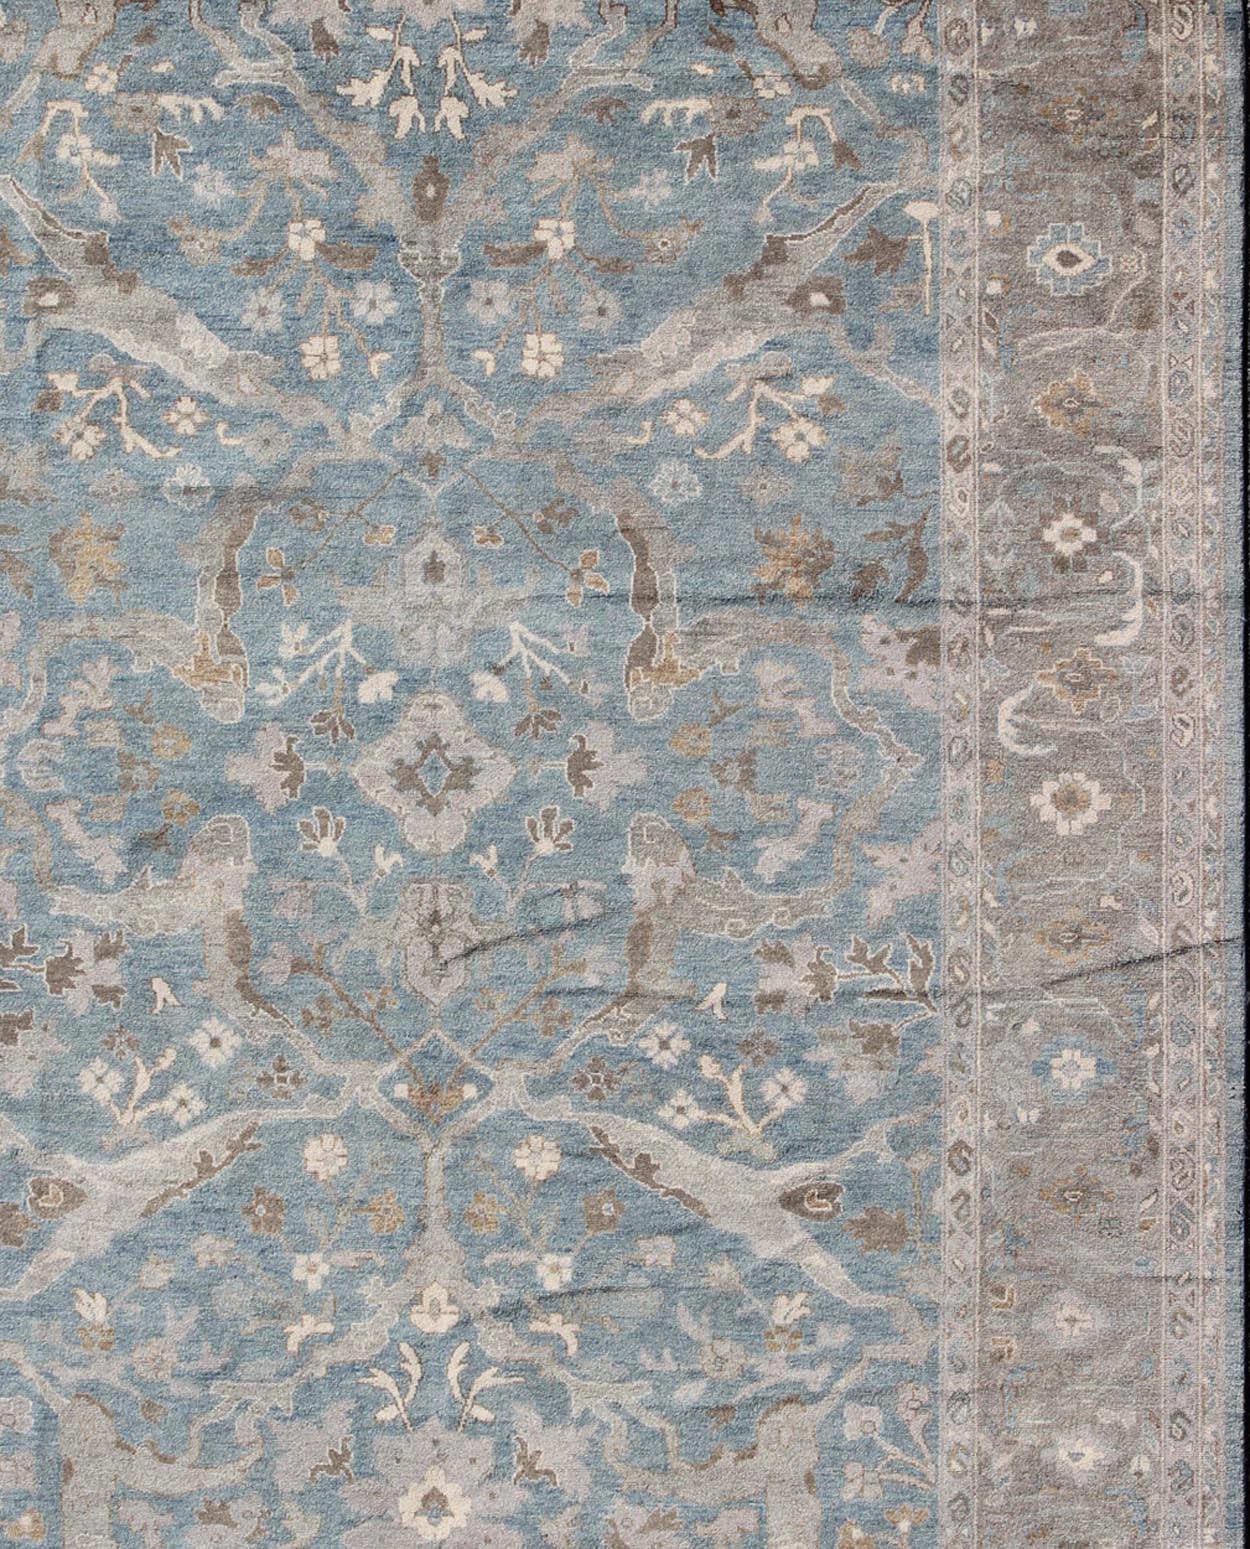 Zeitgenössischer Sultanabad-Teppich mit einzigartigen Farben. Moderner Sultanabad Design-Teppich in Blau, Grau von Keivan Woven Arts.  Keivan Woven Arts Teppich /OB-9350765-6470003, Herkunftsland / Typ: Indien / Sultanabad, ca. Anfang 21.